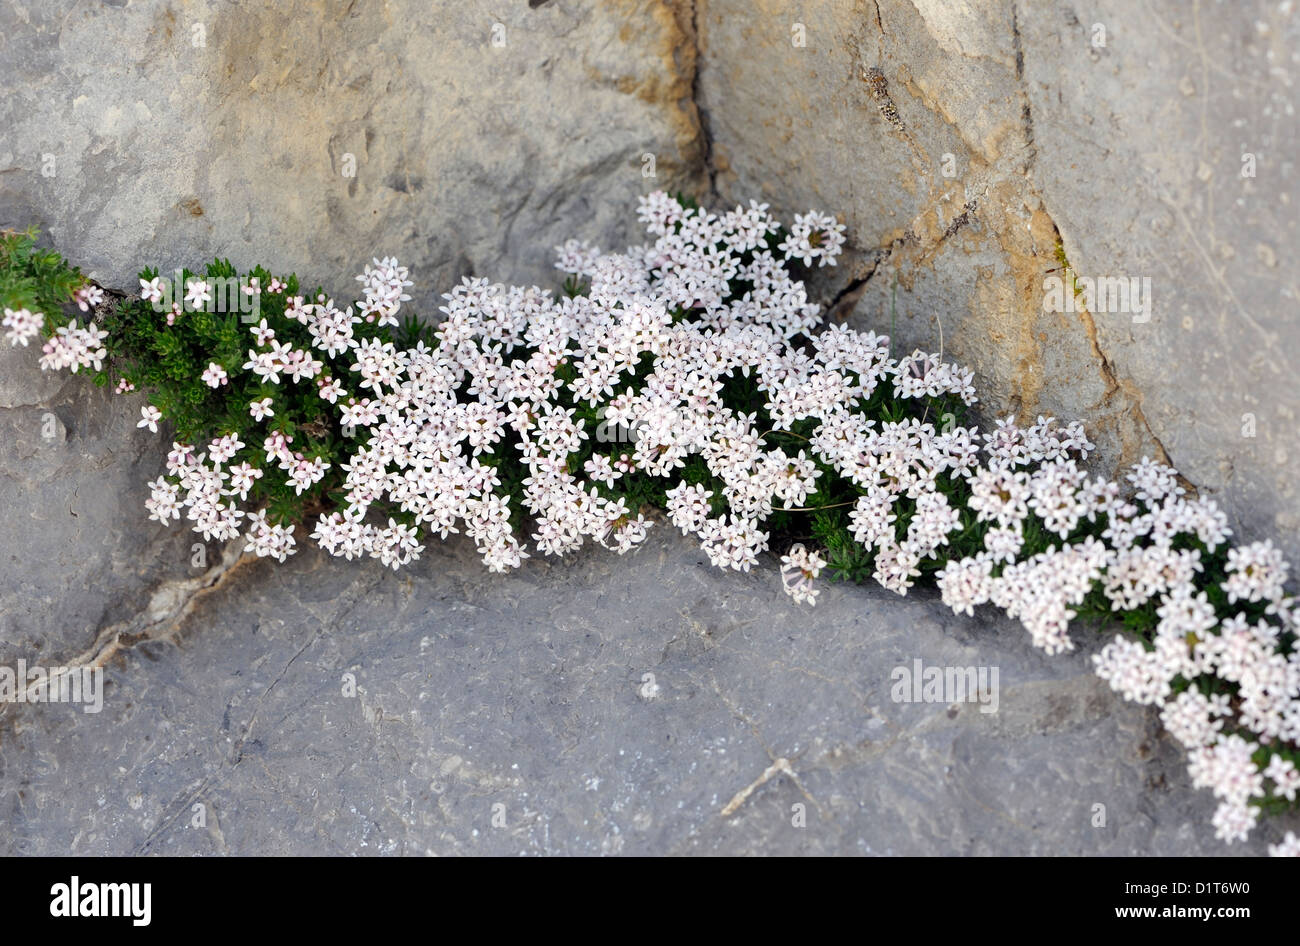 Alpine Pflanzen wachsen in Kalkfelsen. Fuente De, Nationalpark Picos de Europa. Picos de Europa. Spanien Stockfoto